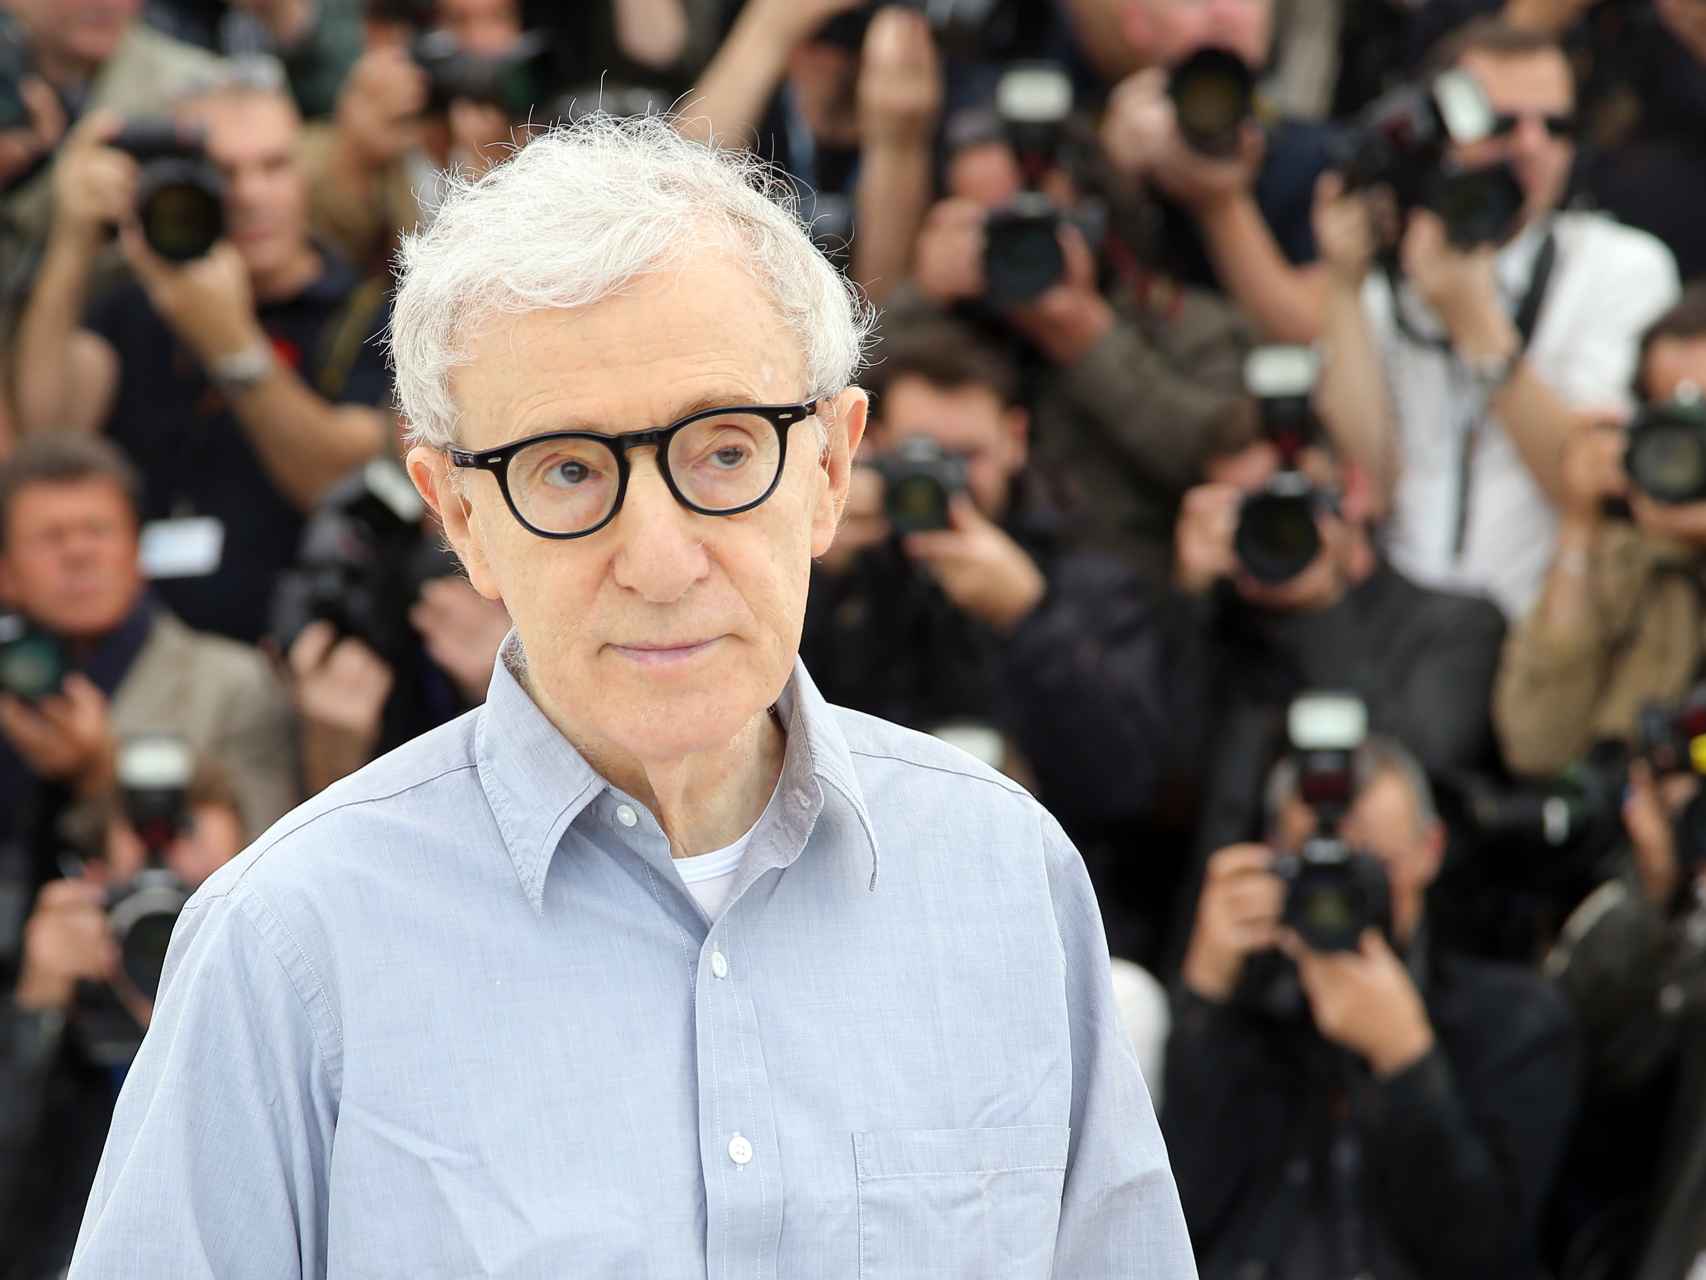 El hijo de Woody Allen rescata la historia de abusos sexuales de su padre a su hermana